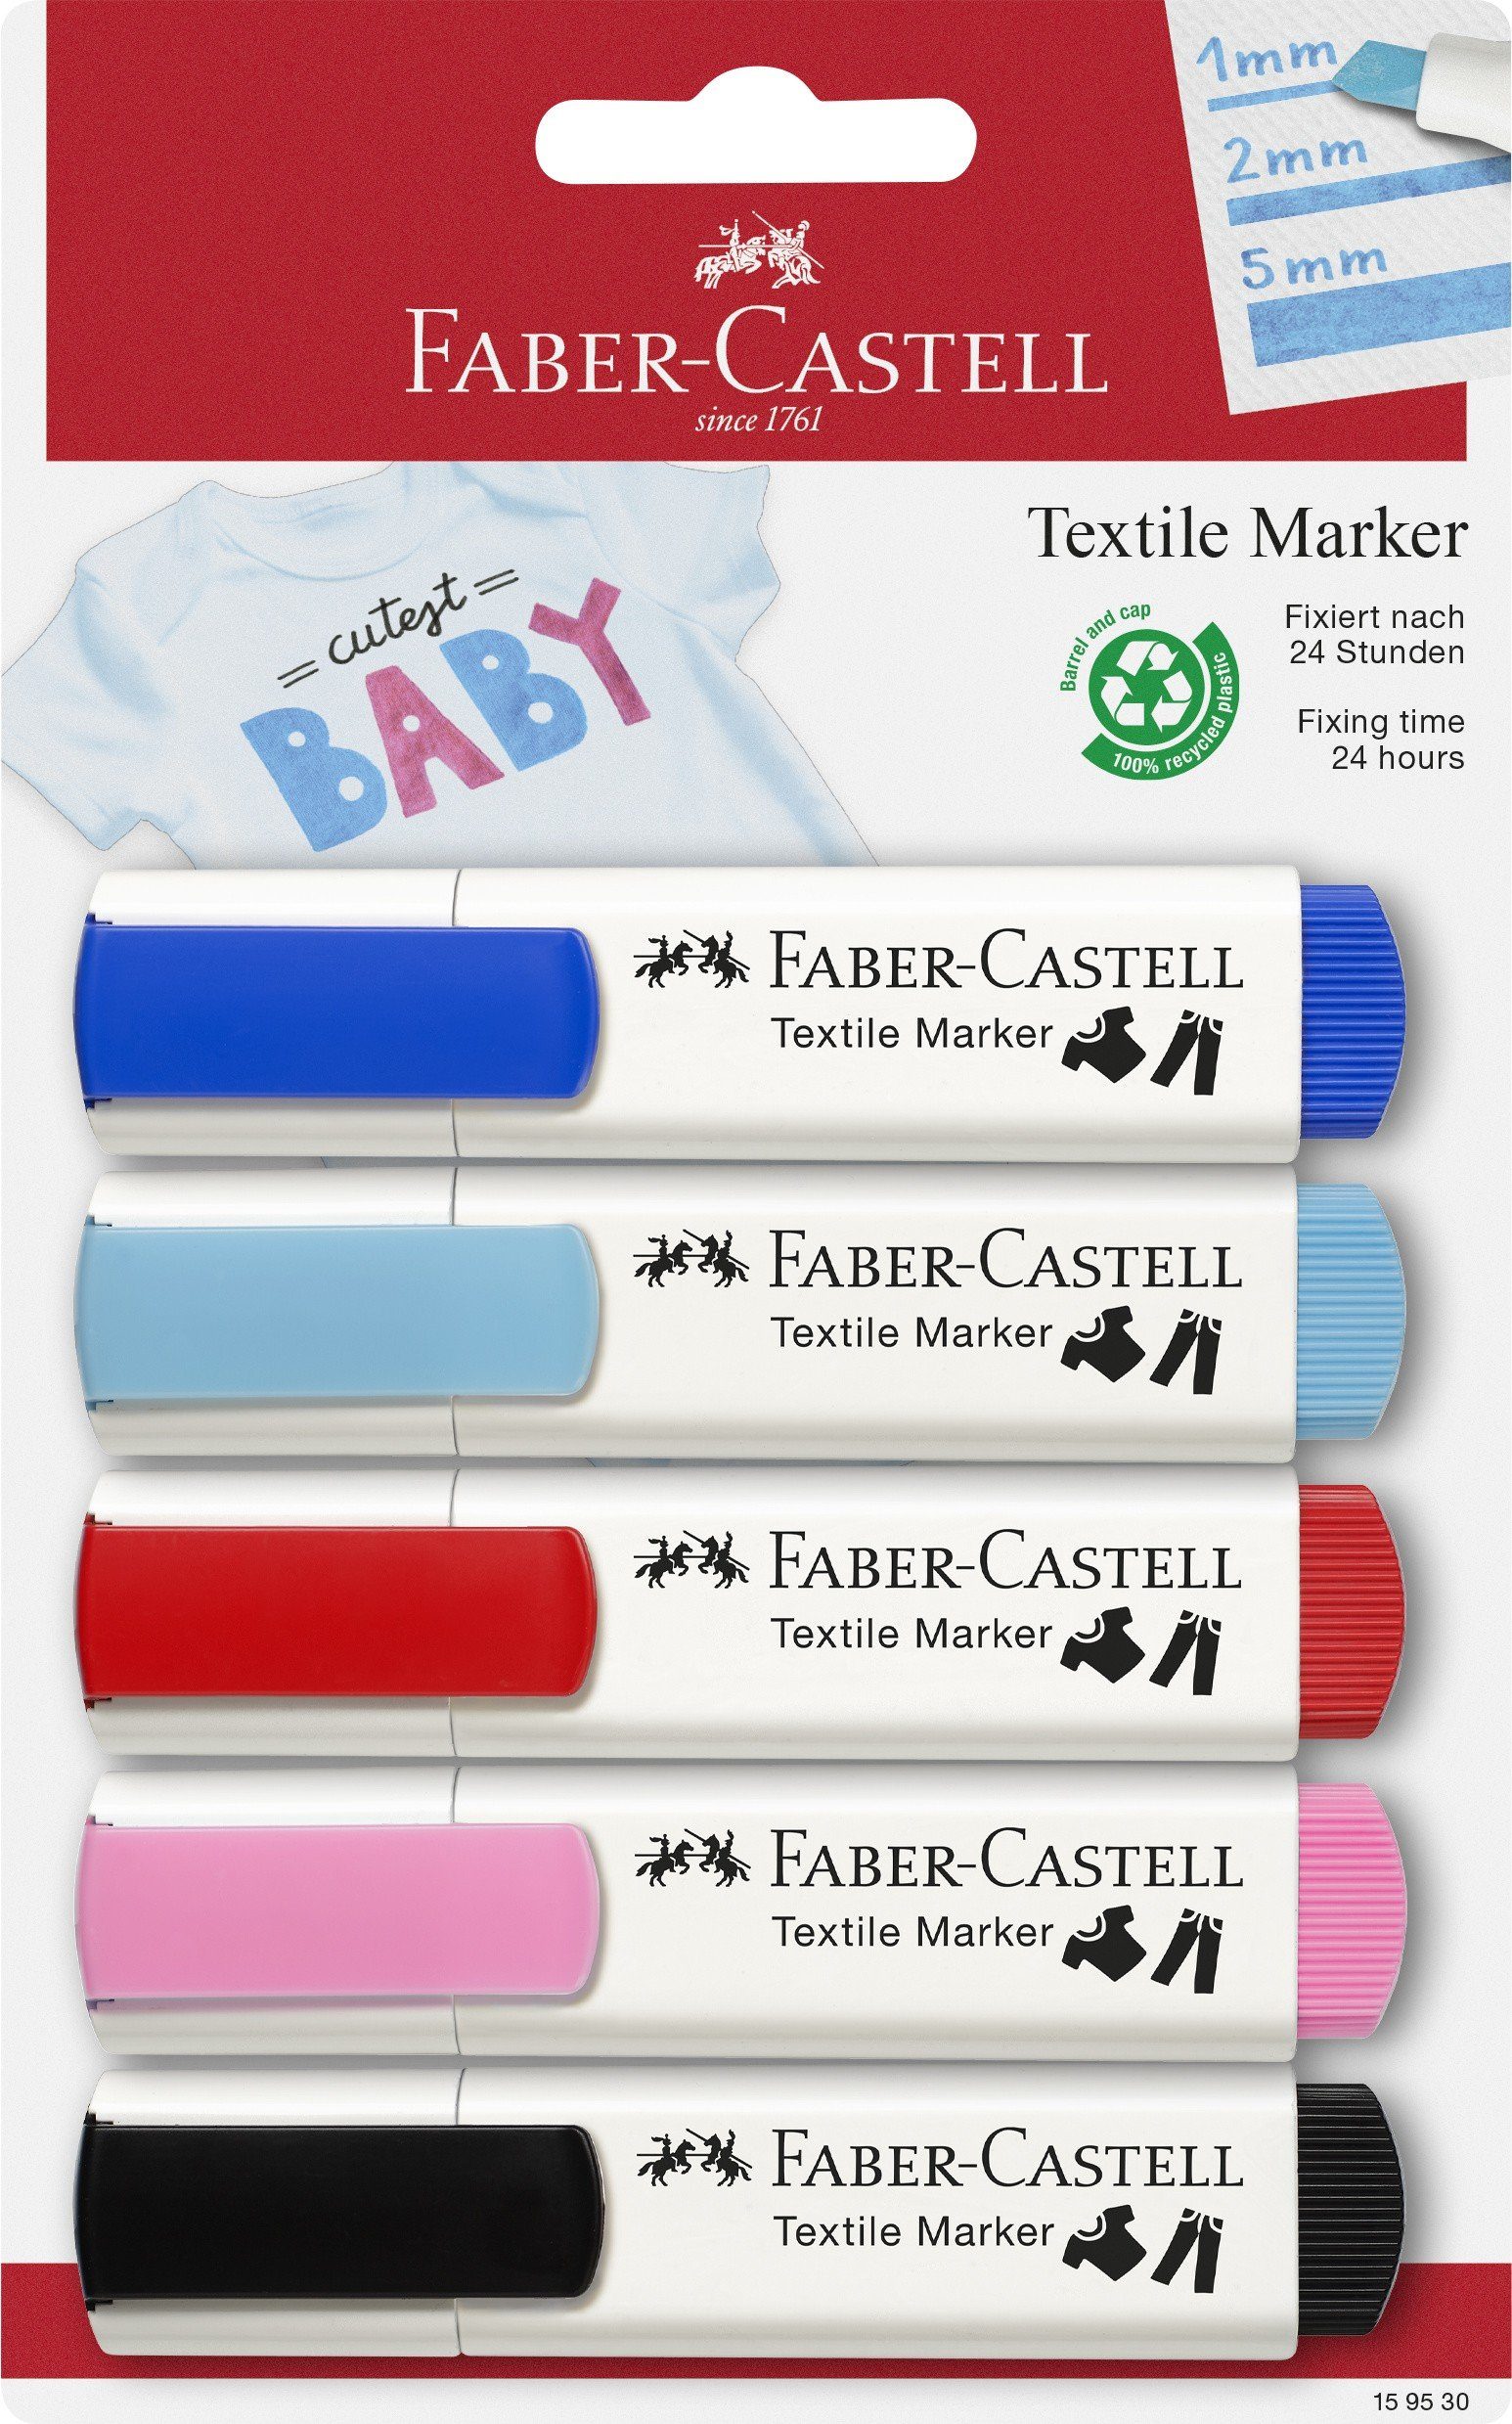 Neue Artikel sind eingetroffen 1 Faber-Castell Marker Faber-Castell Textilmarker Set Baby-Party 5er